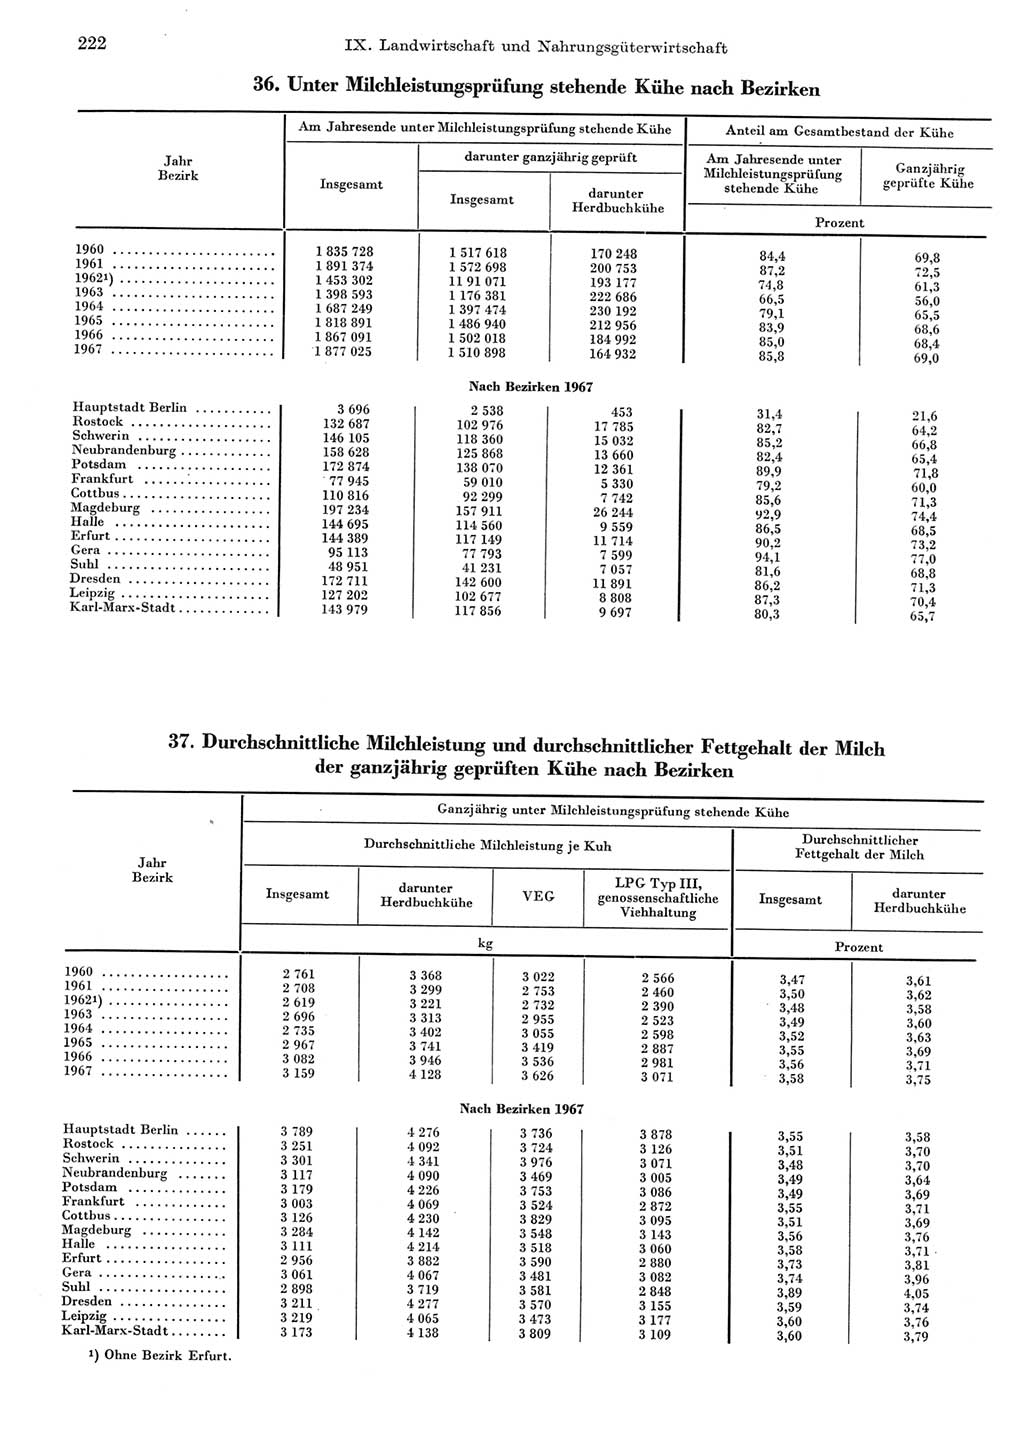 Statistisches Jahrbuch der Deutschen Demokratischen Republik (DDR) 1969, Seite 222 (Stat. Jb. DDR 1969, S. 222)